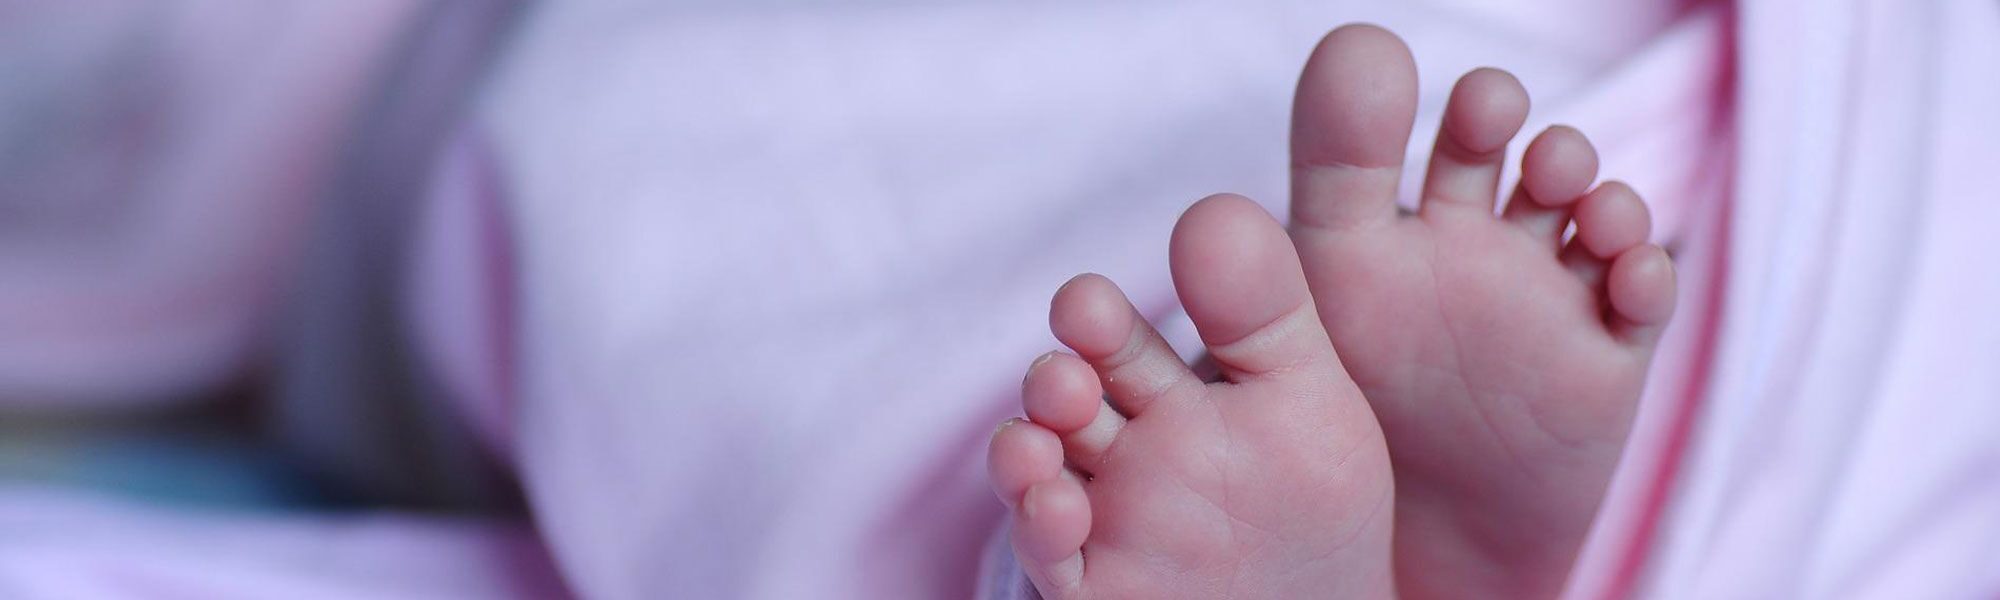 naissance pieds de bébé